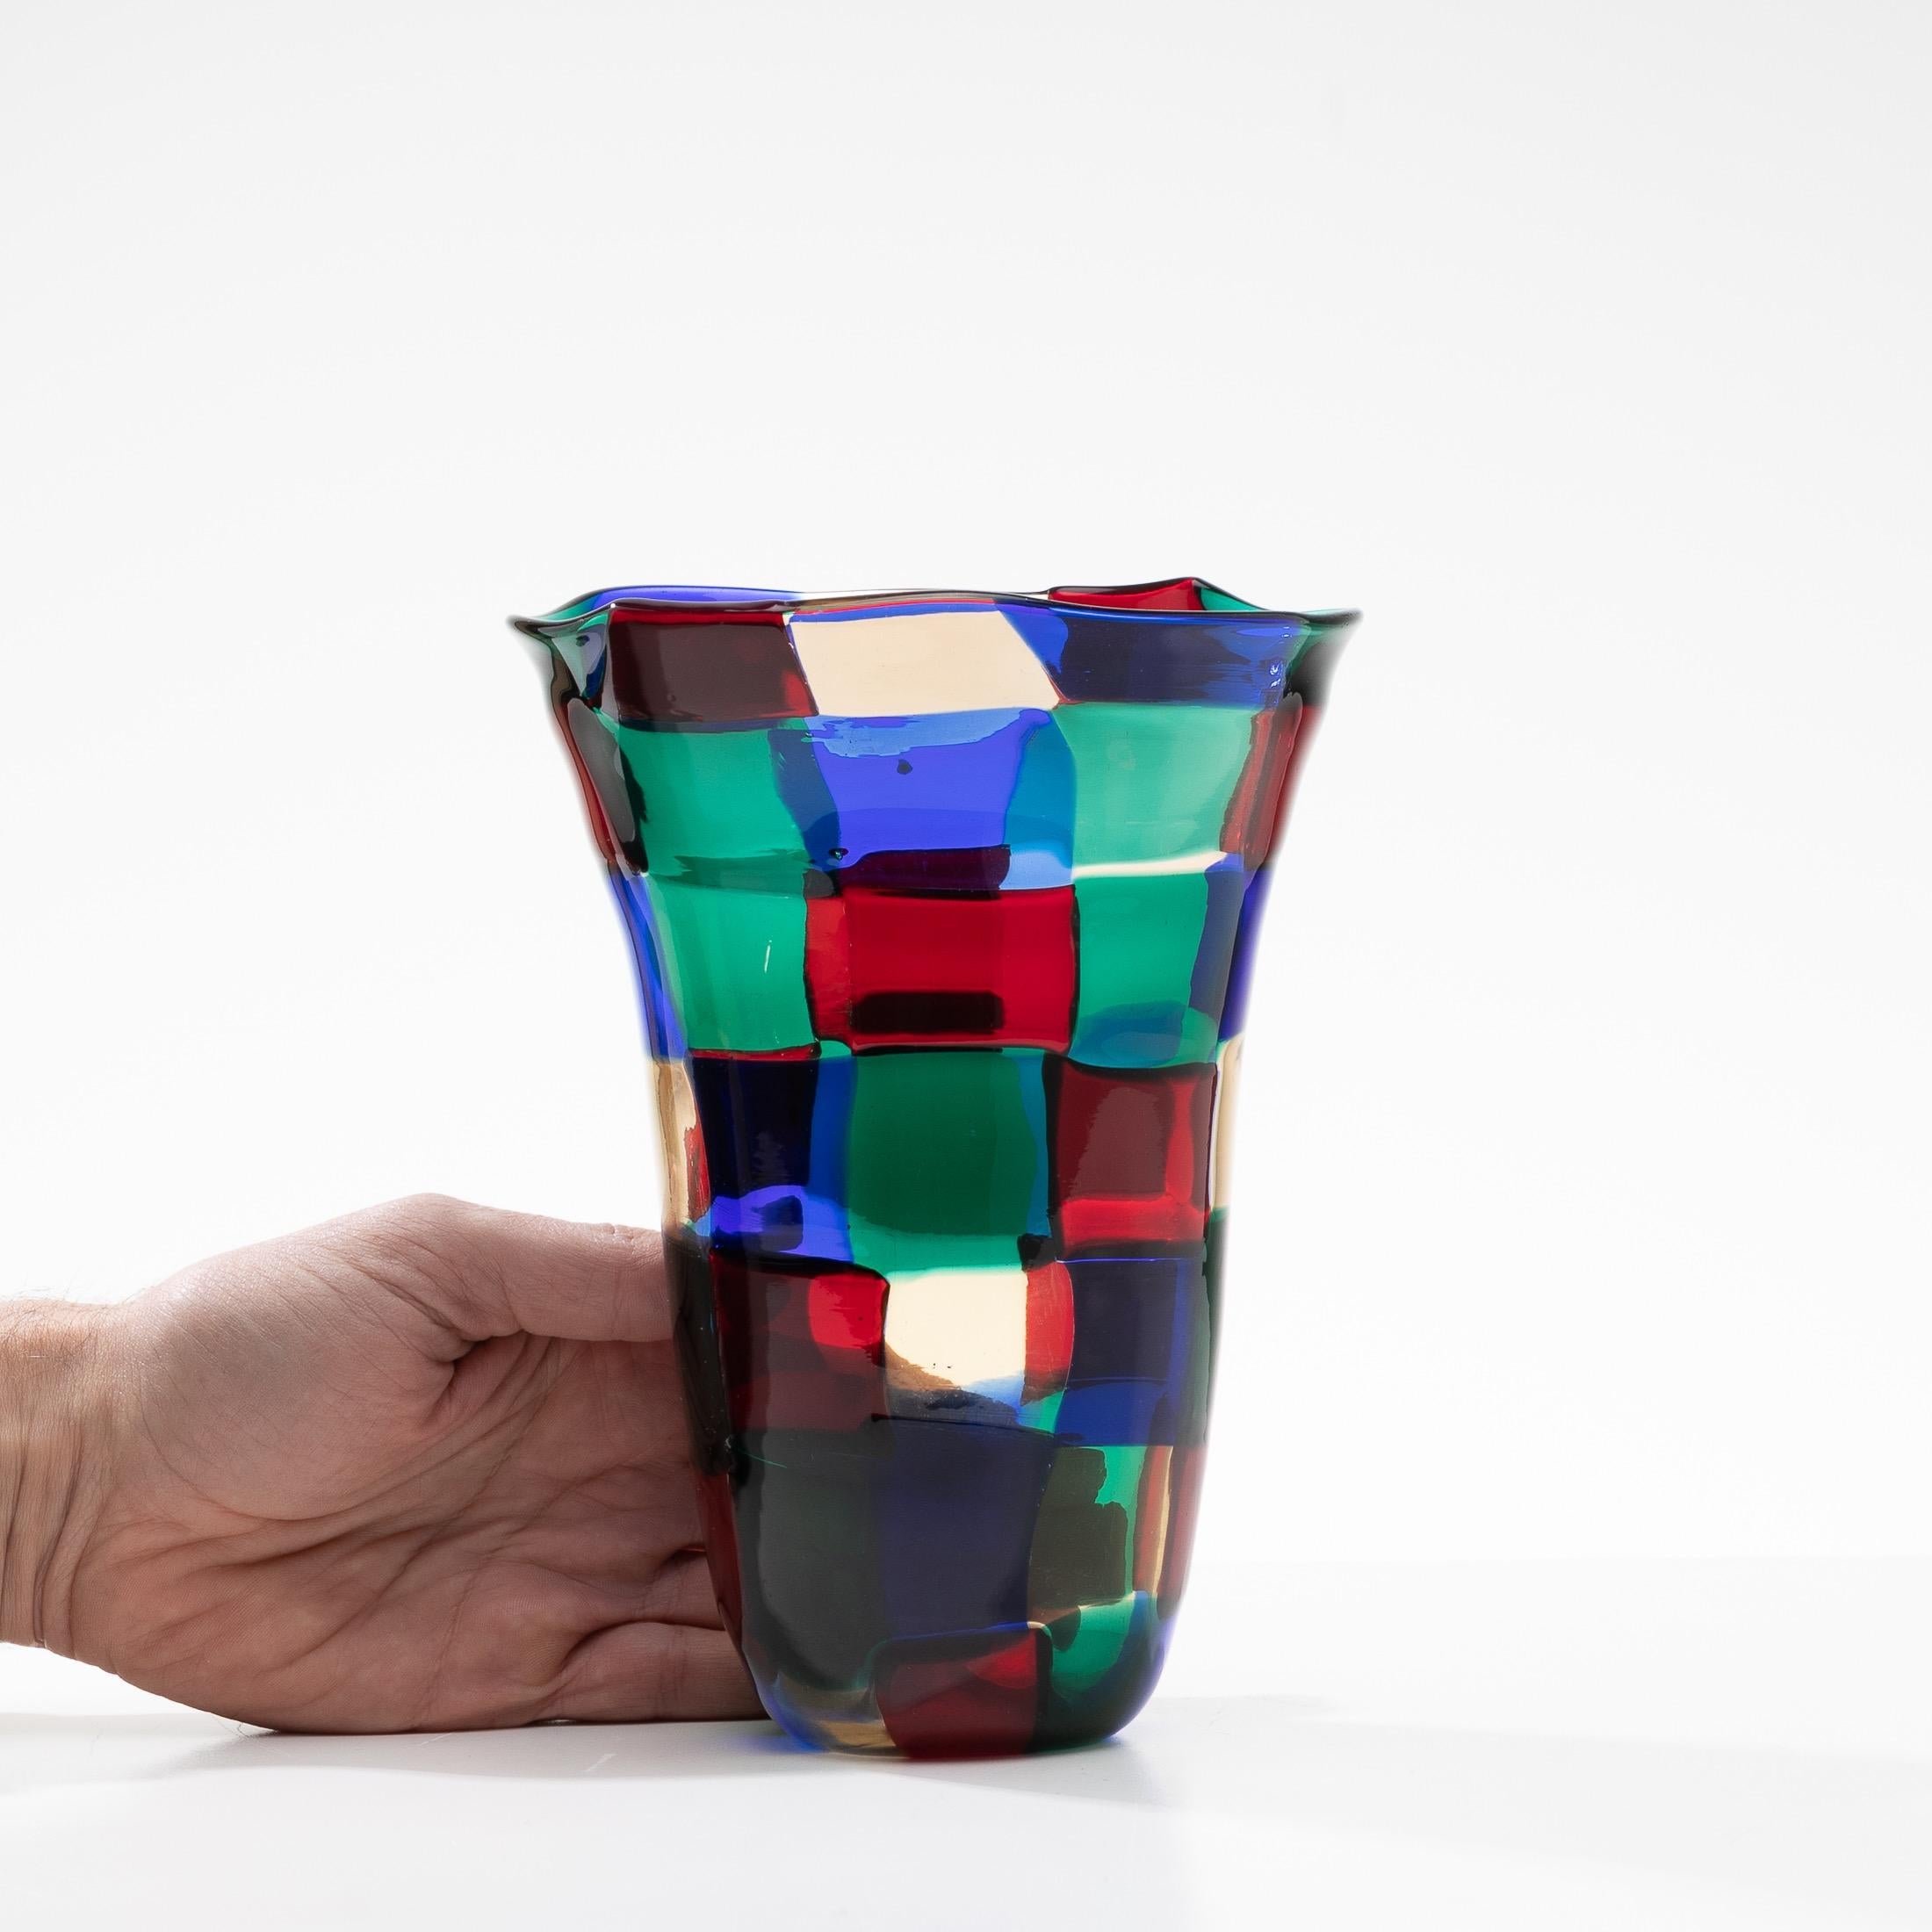 Pezzato Vase by Fulvio Bianconi, Color Variant “Parigi”, Venini Murano, Italy 2